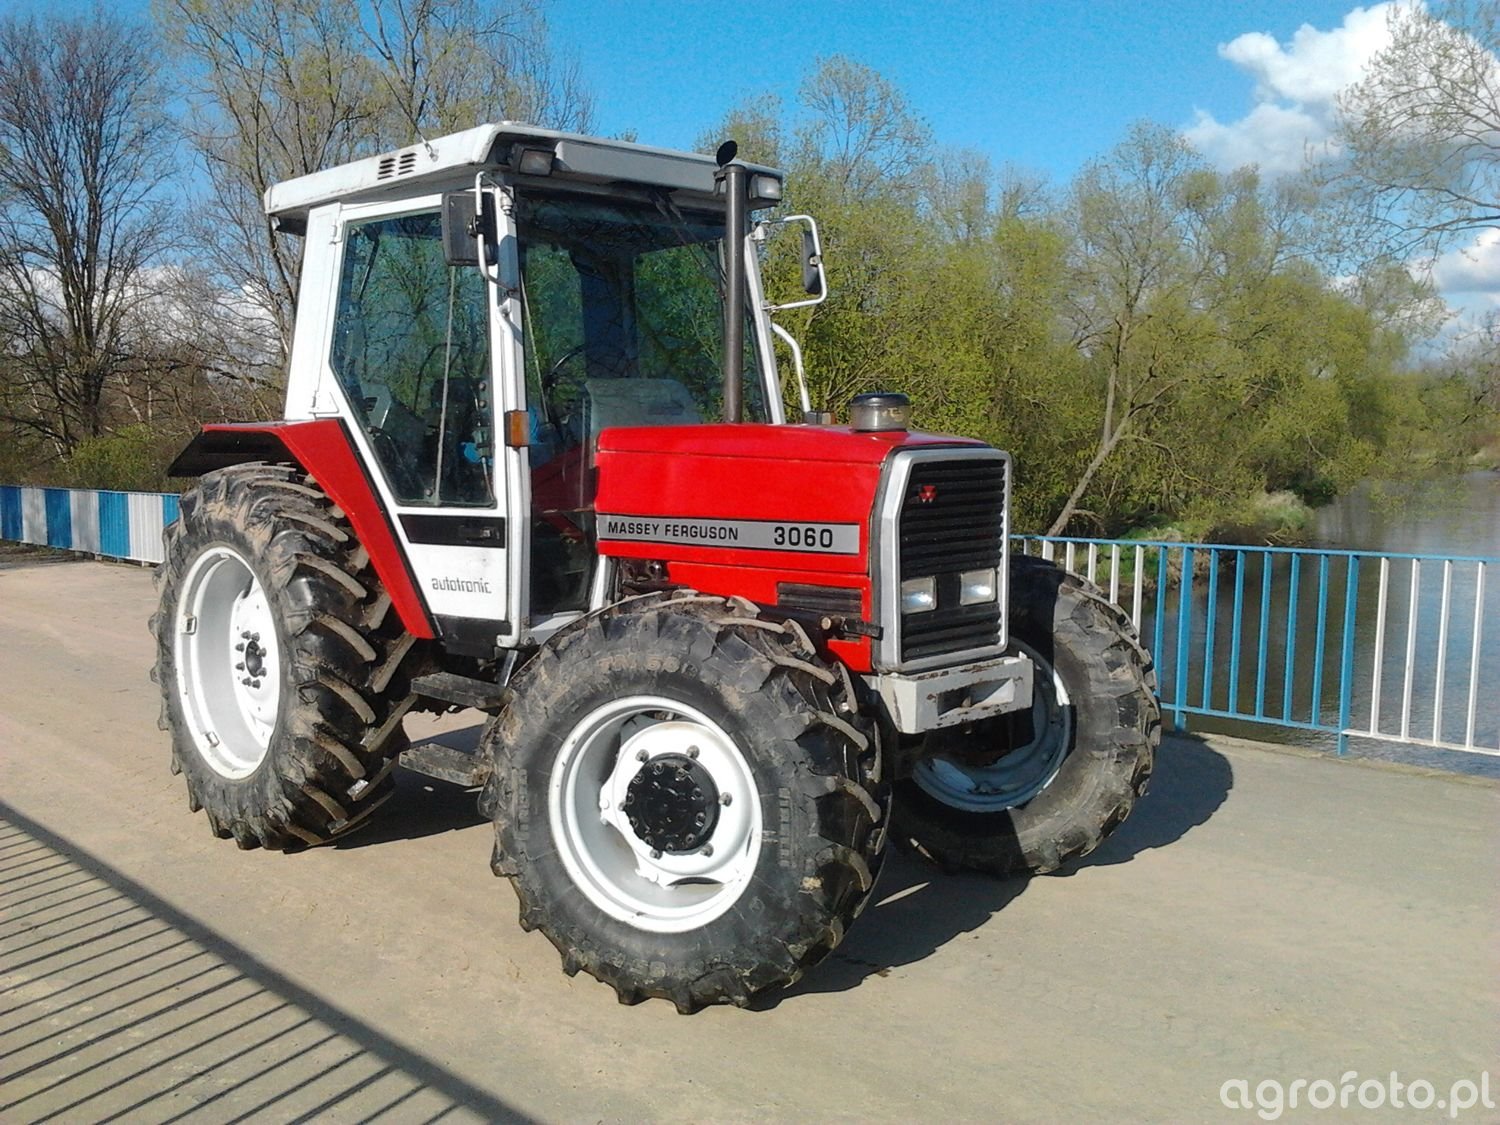 Obraz traktor MF 3060 id:498934 - Galeria rolnicza agrofoto